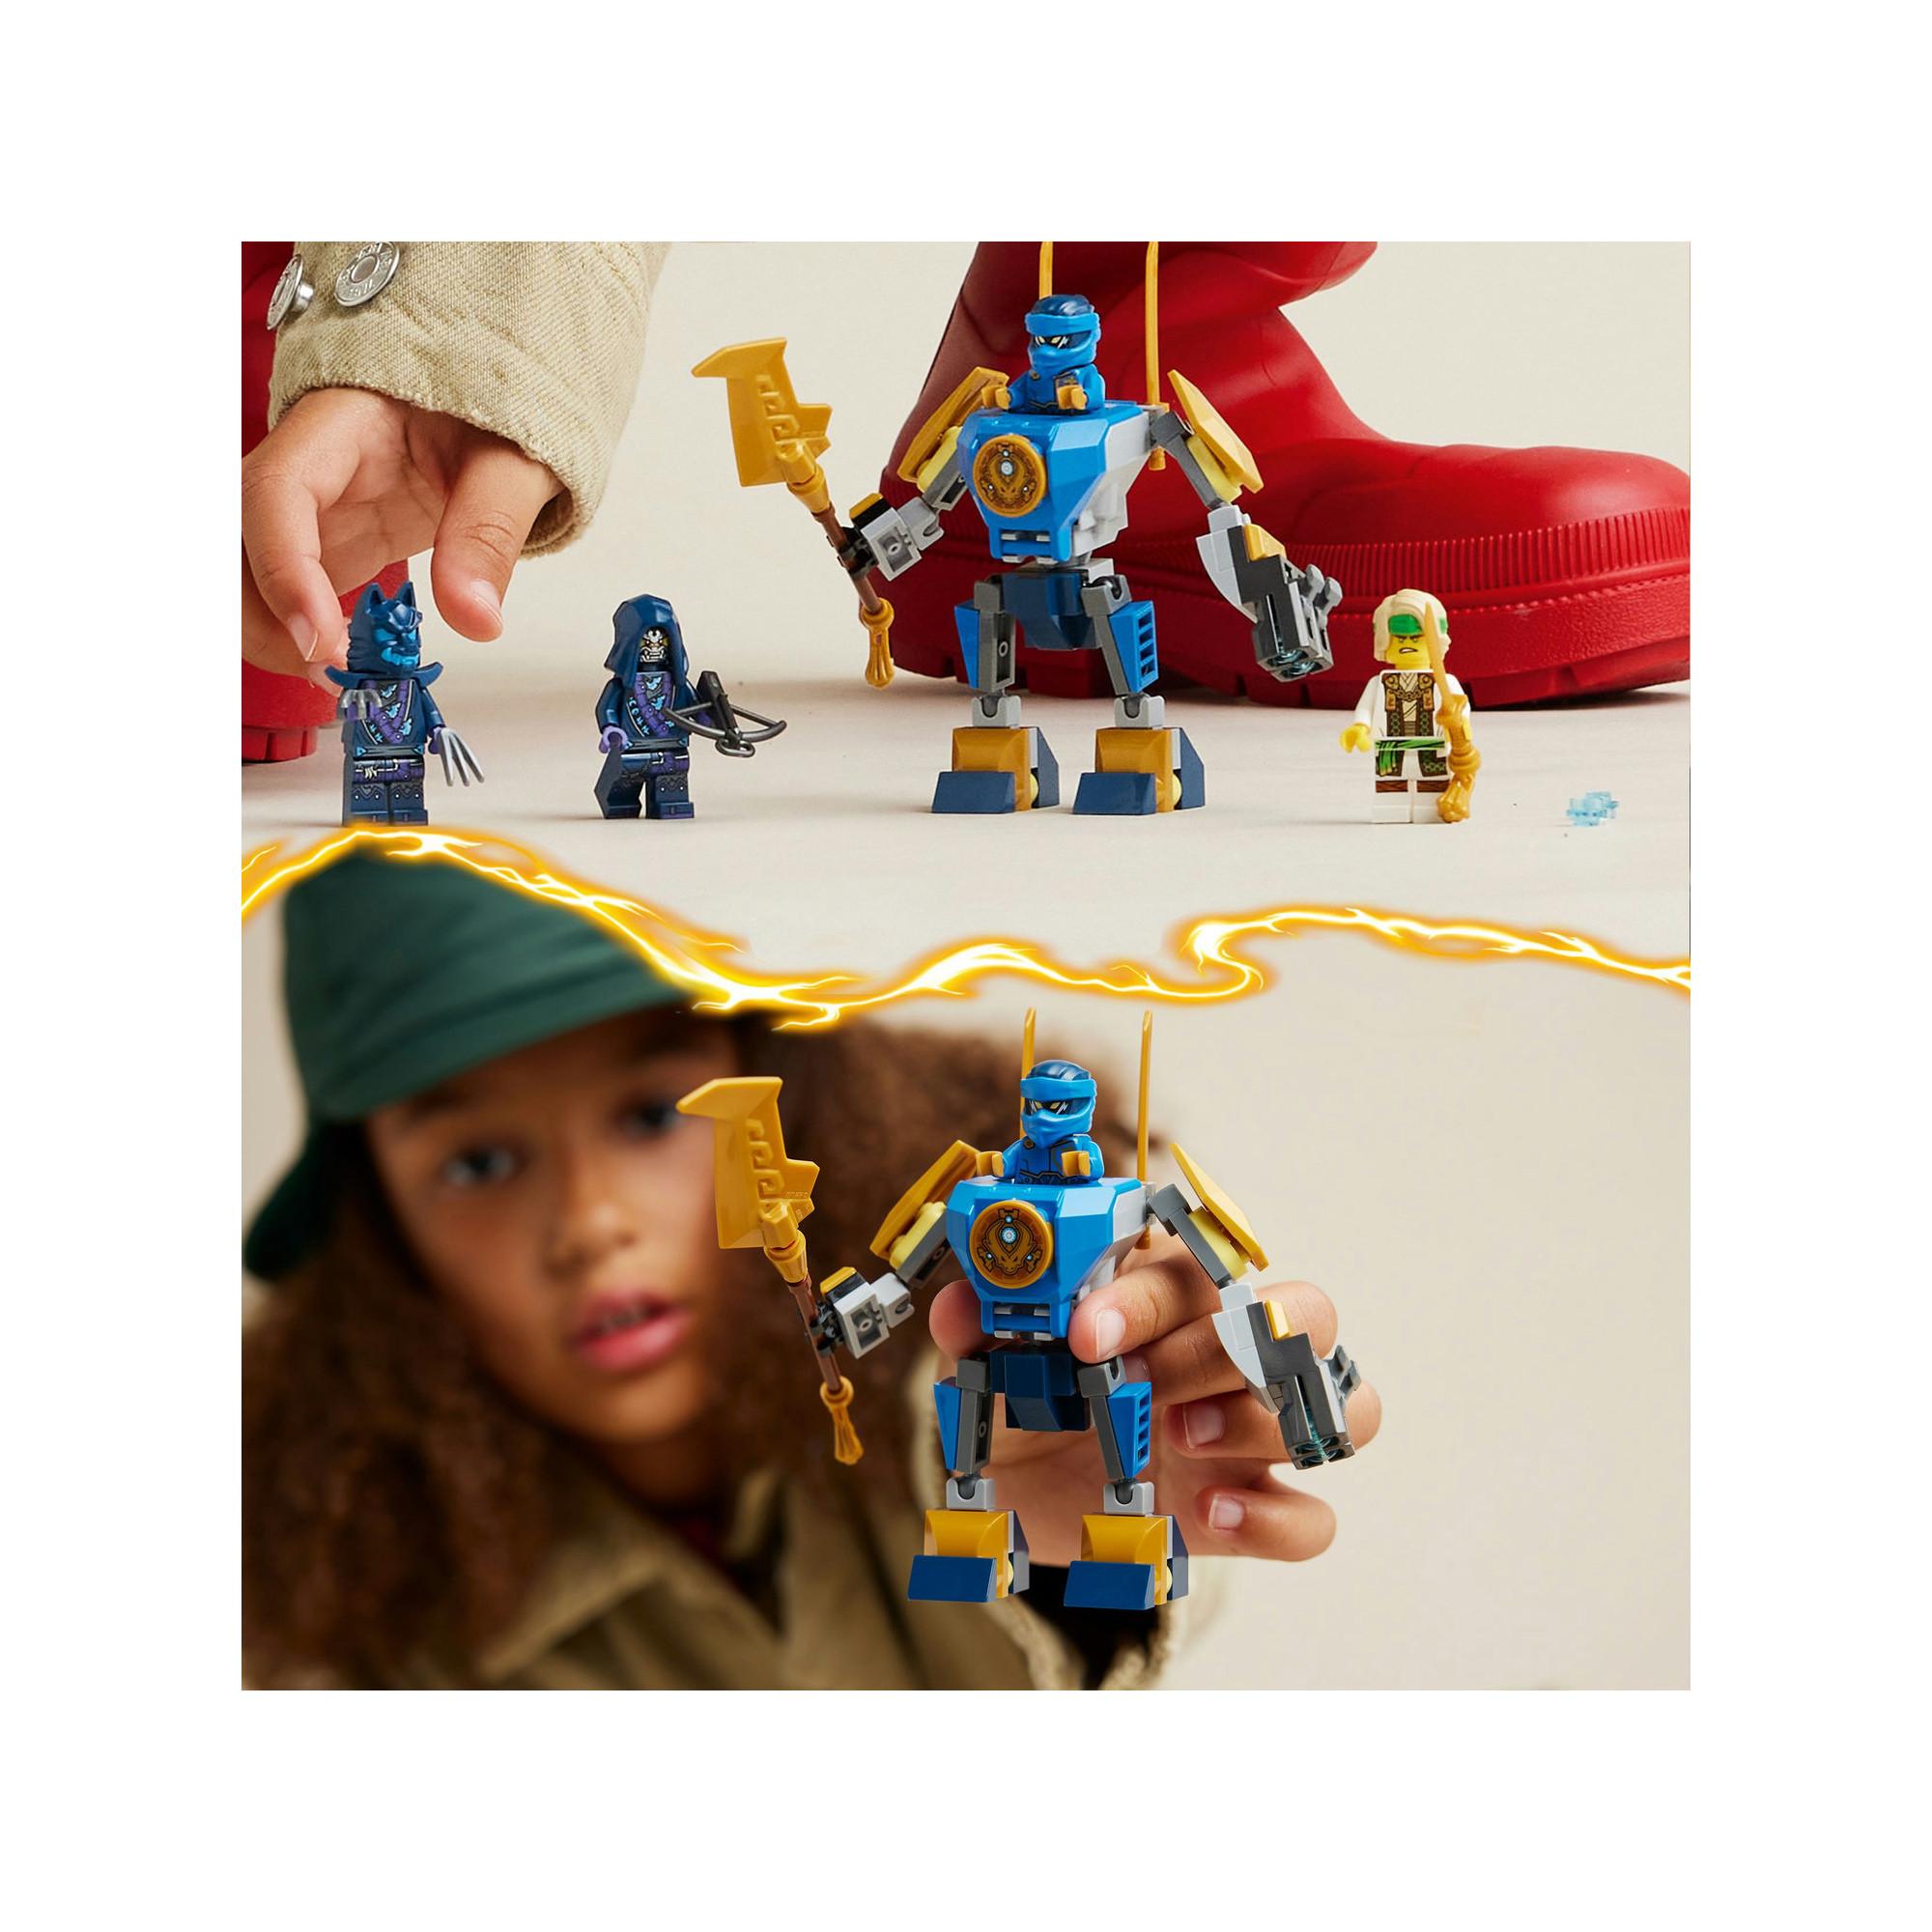 LEGO®  71805 Pack de combat : le robot de Jay 